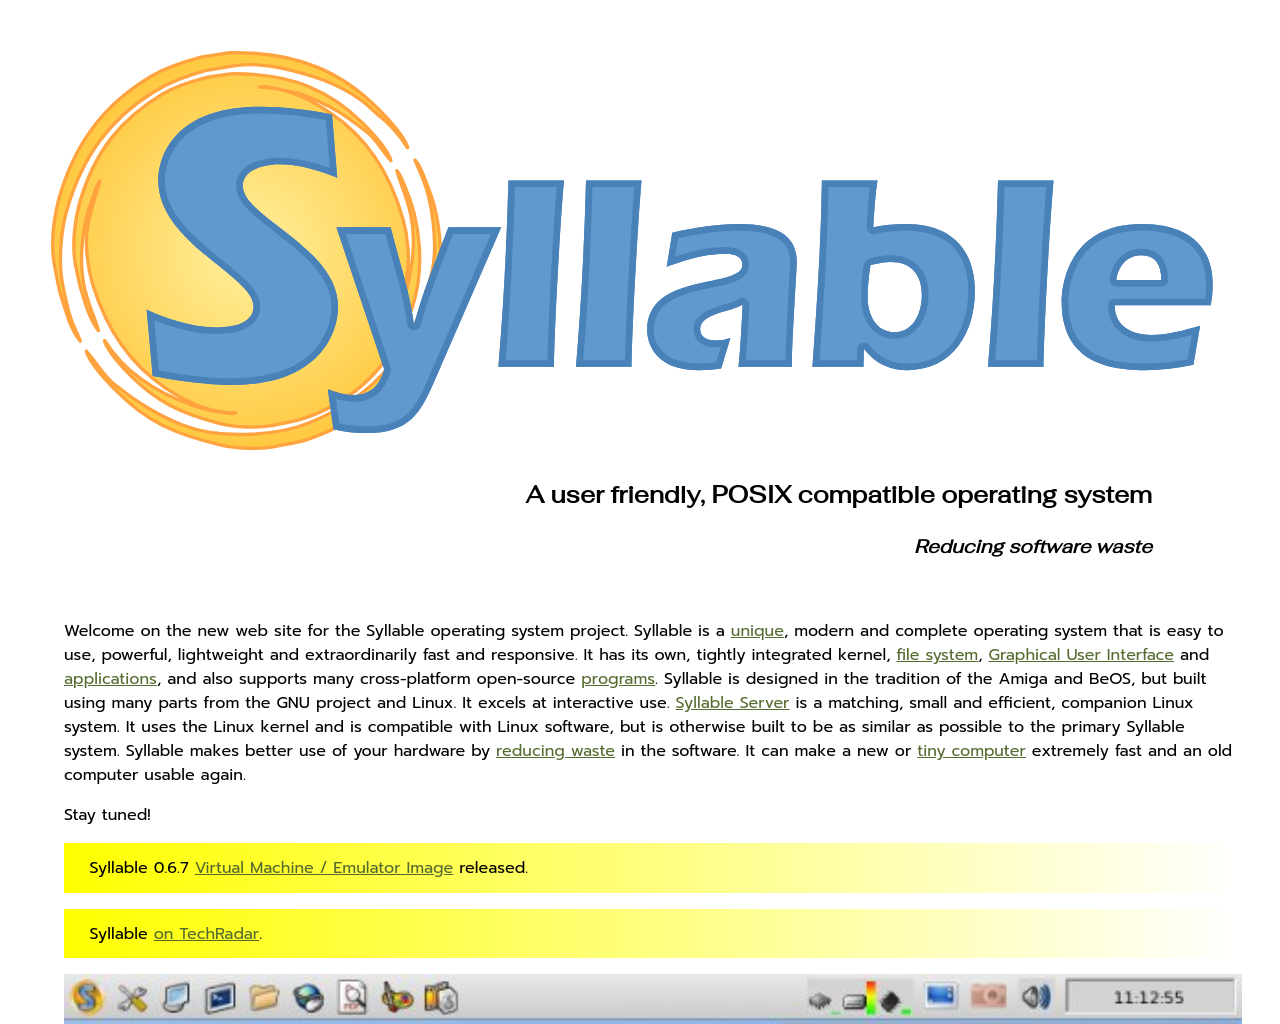 syllable.org